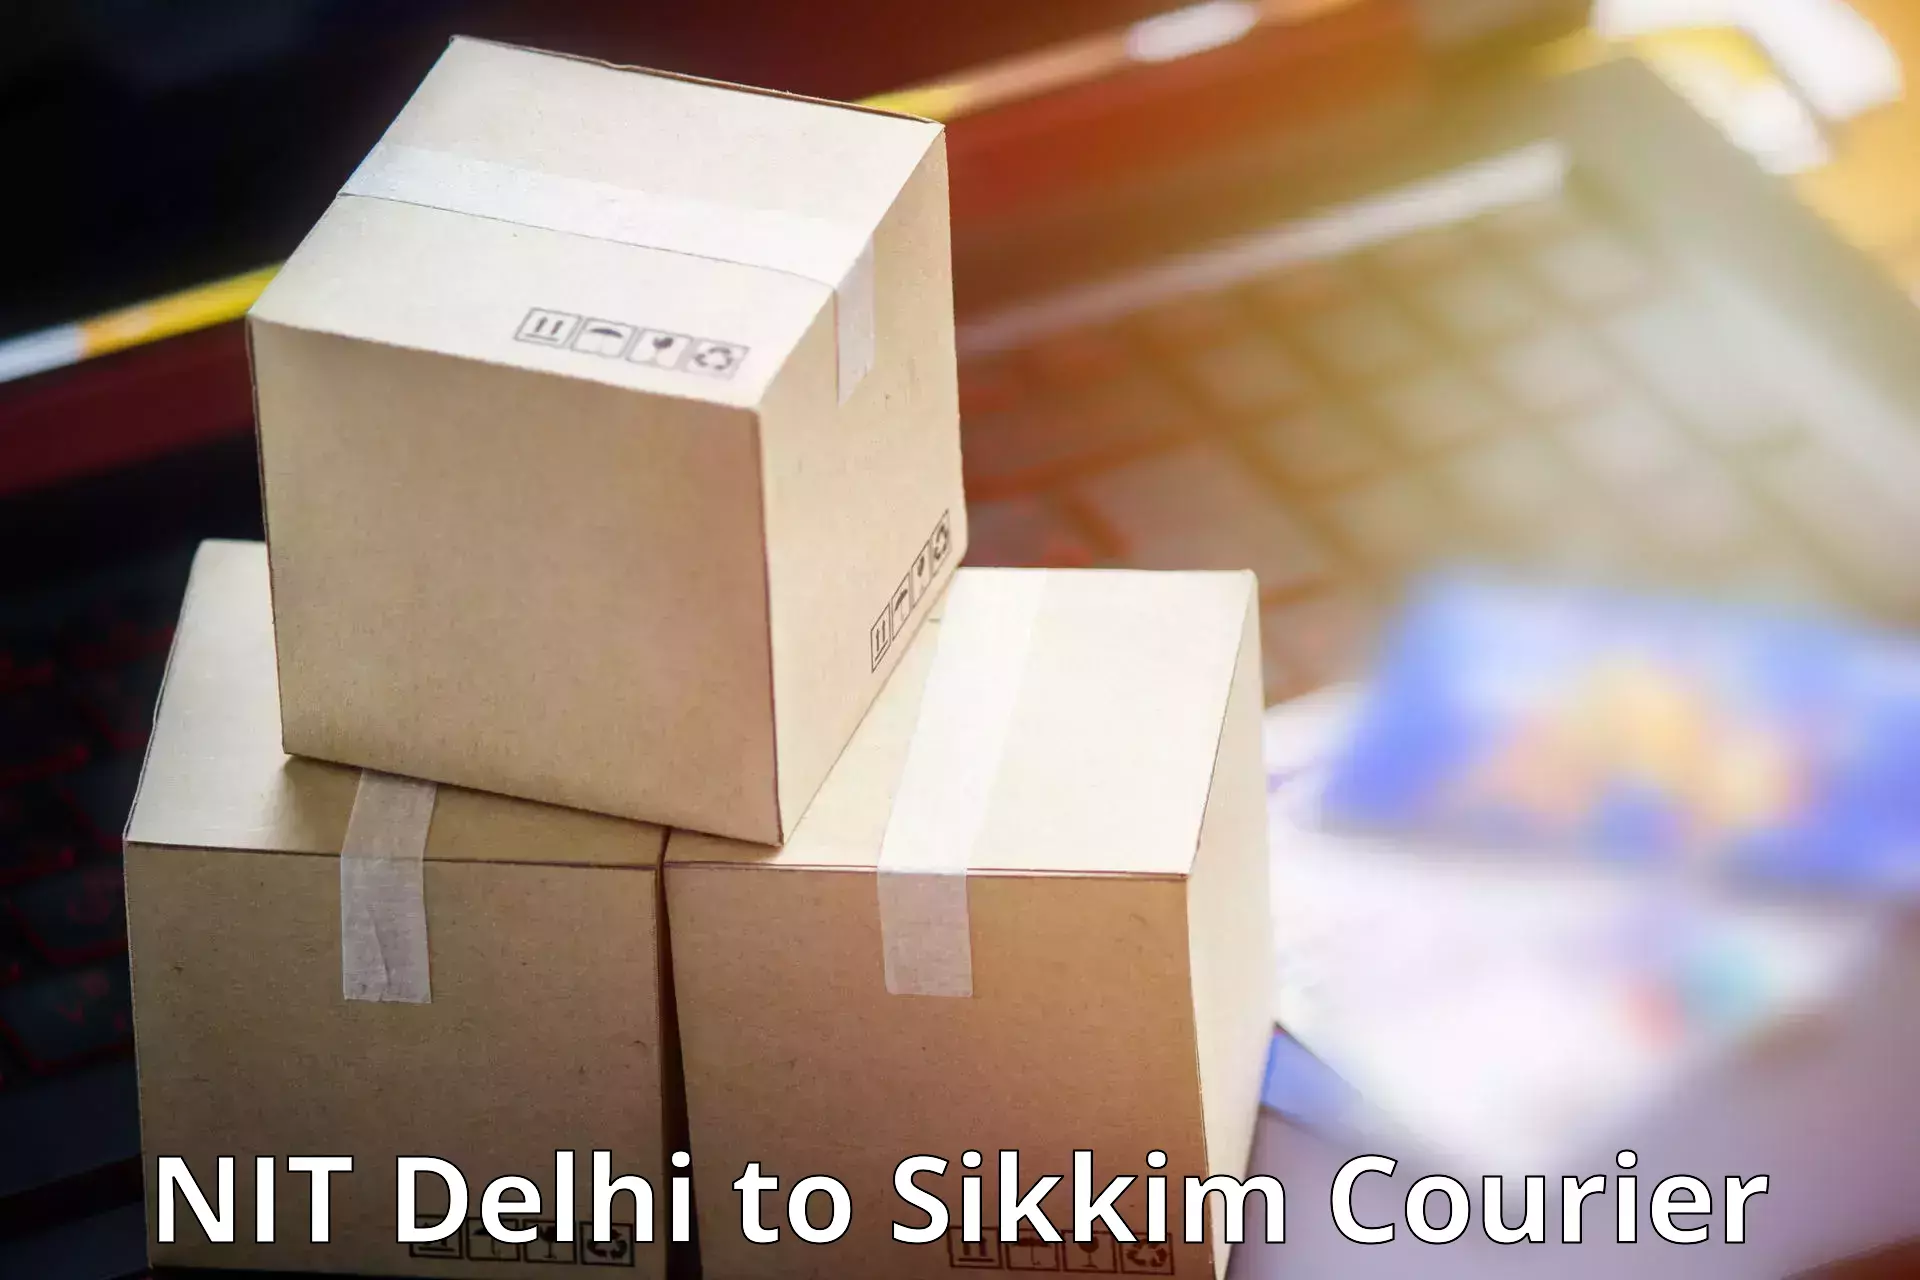 Courier app NIT Delhi to Gangtok